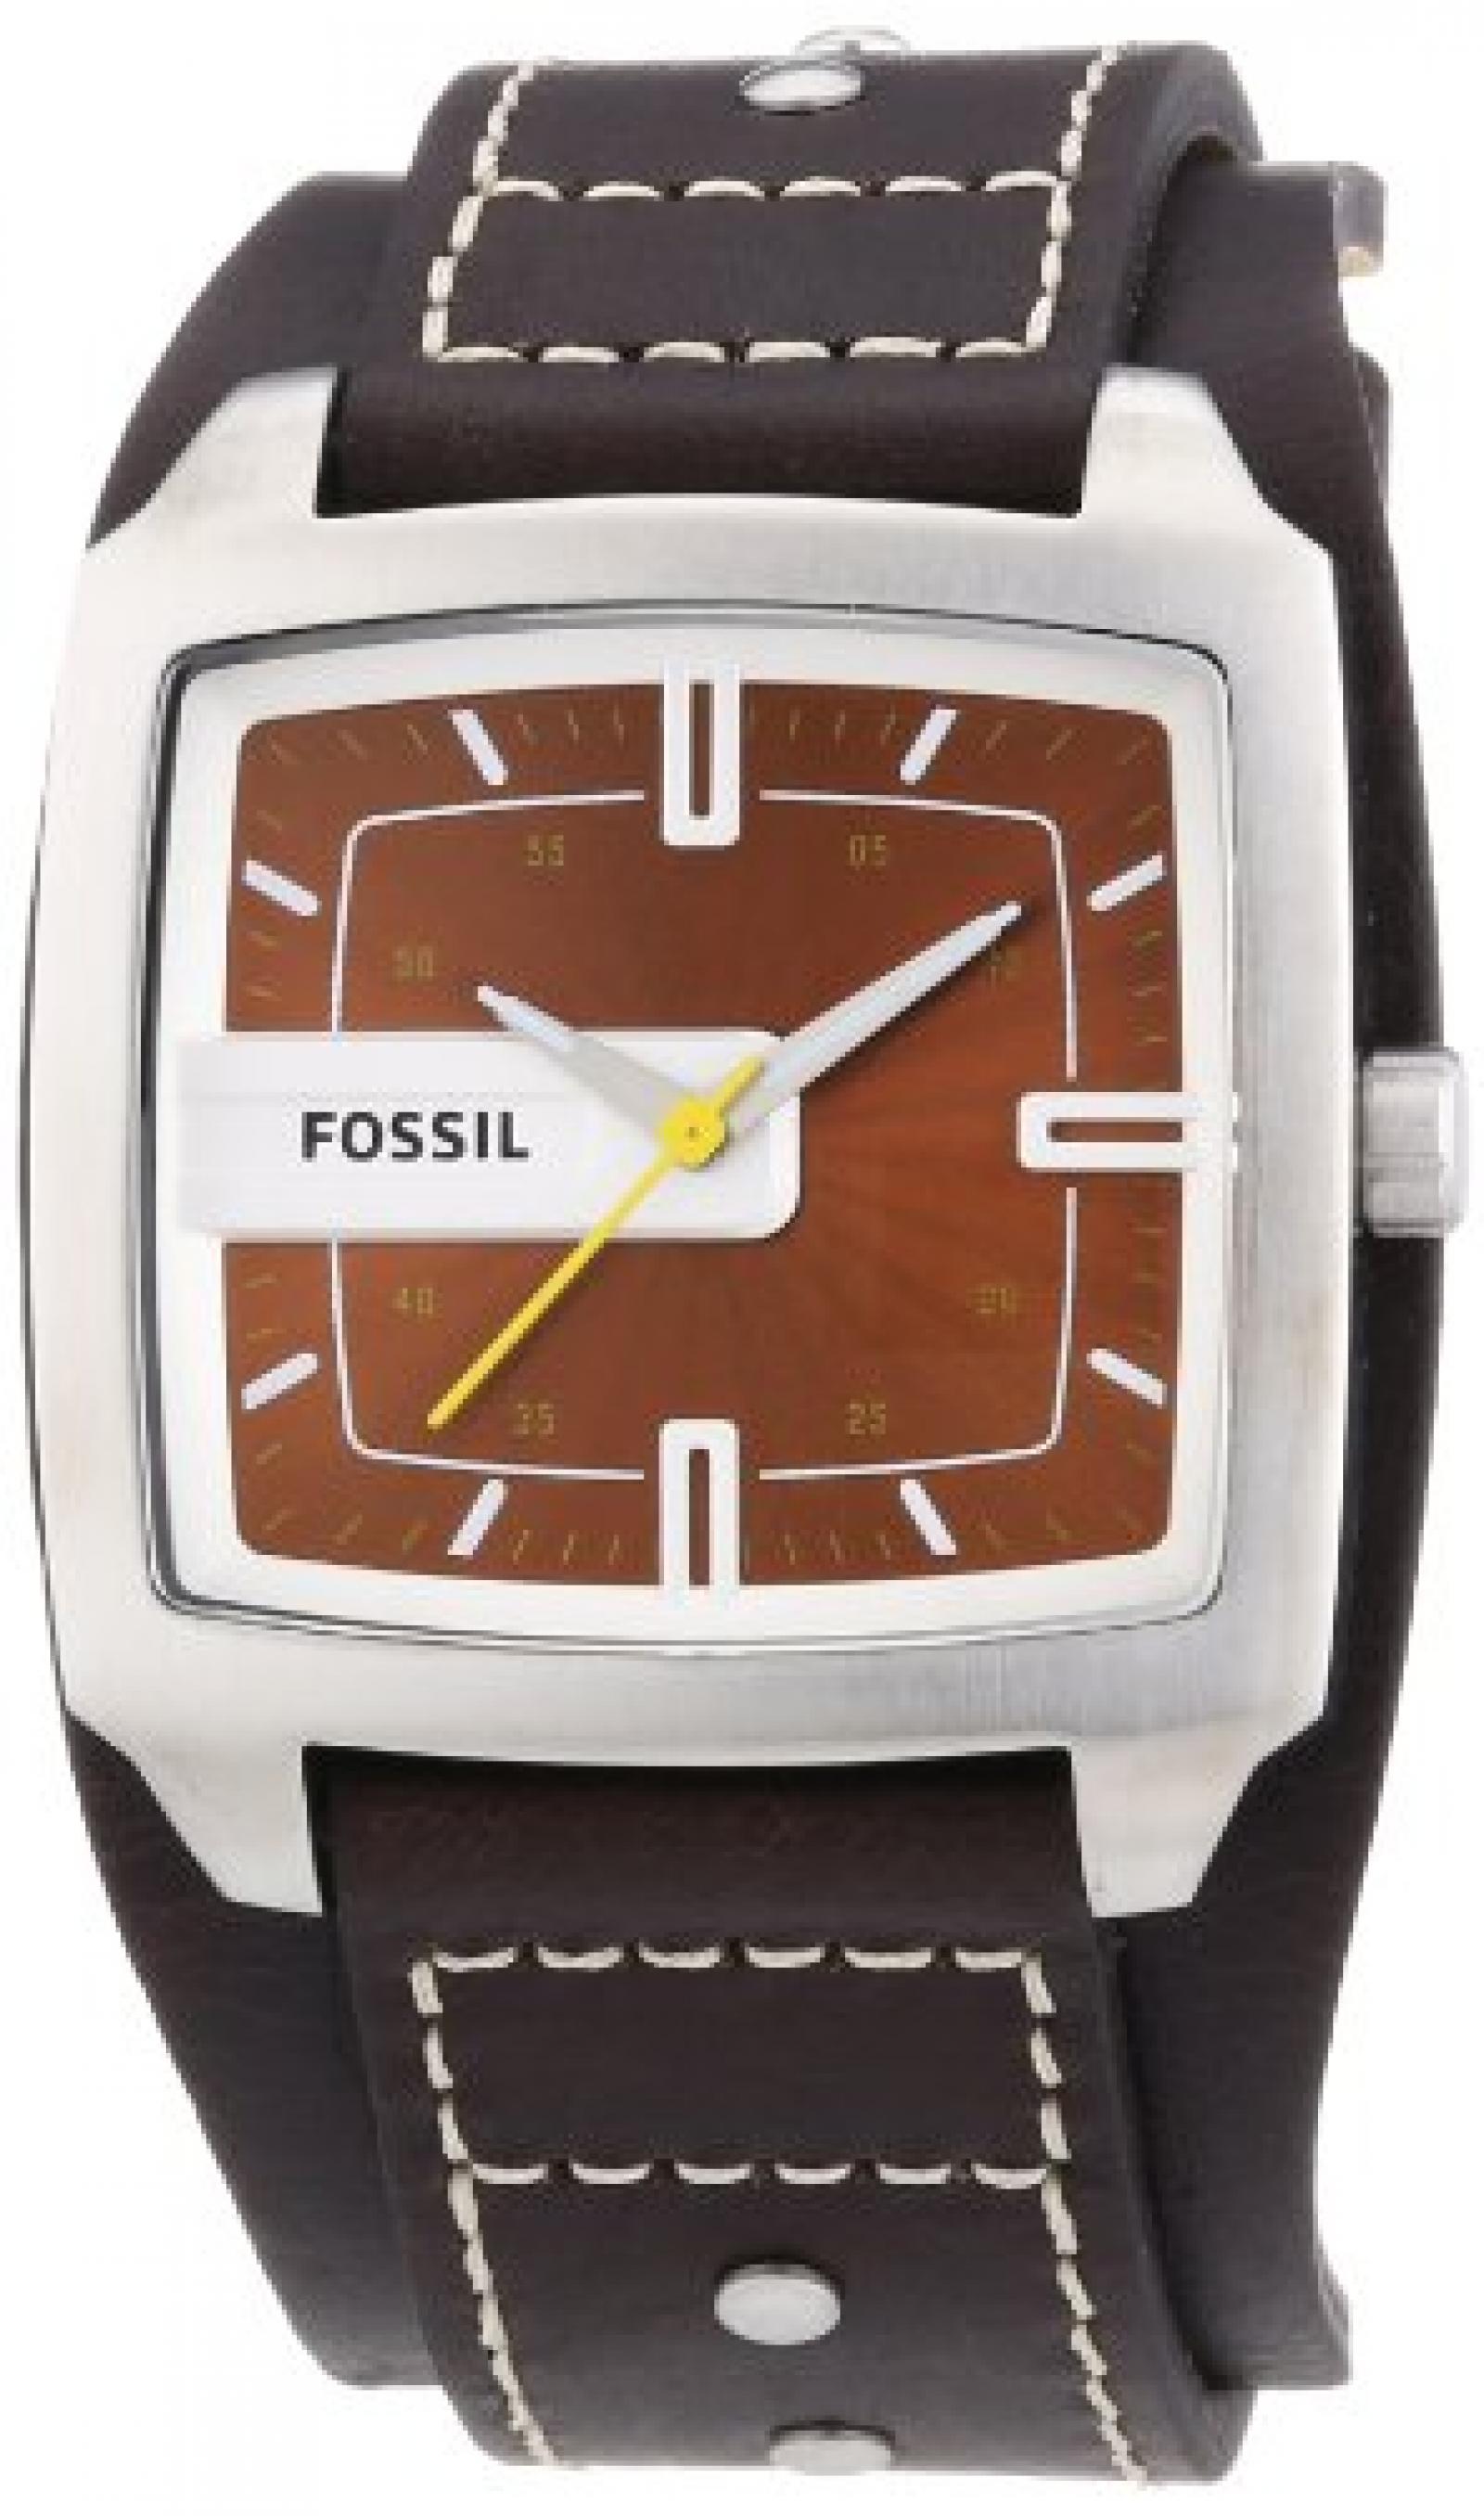 Fossil Herren-Armbanduhr Analog Leder braun Trend JR9990 